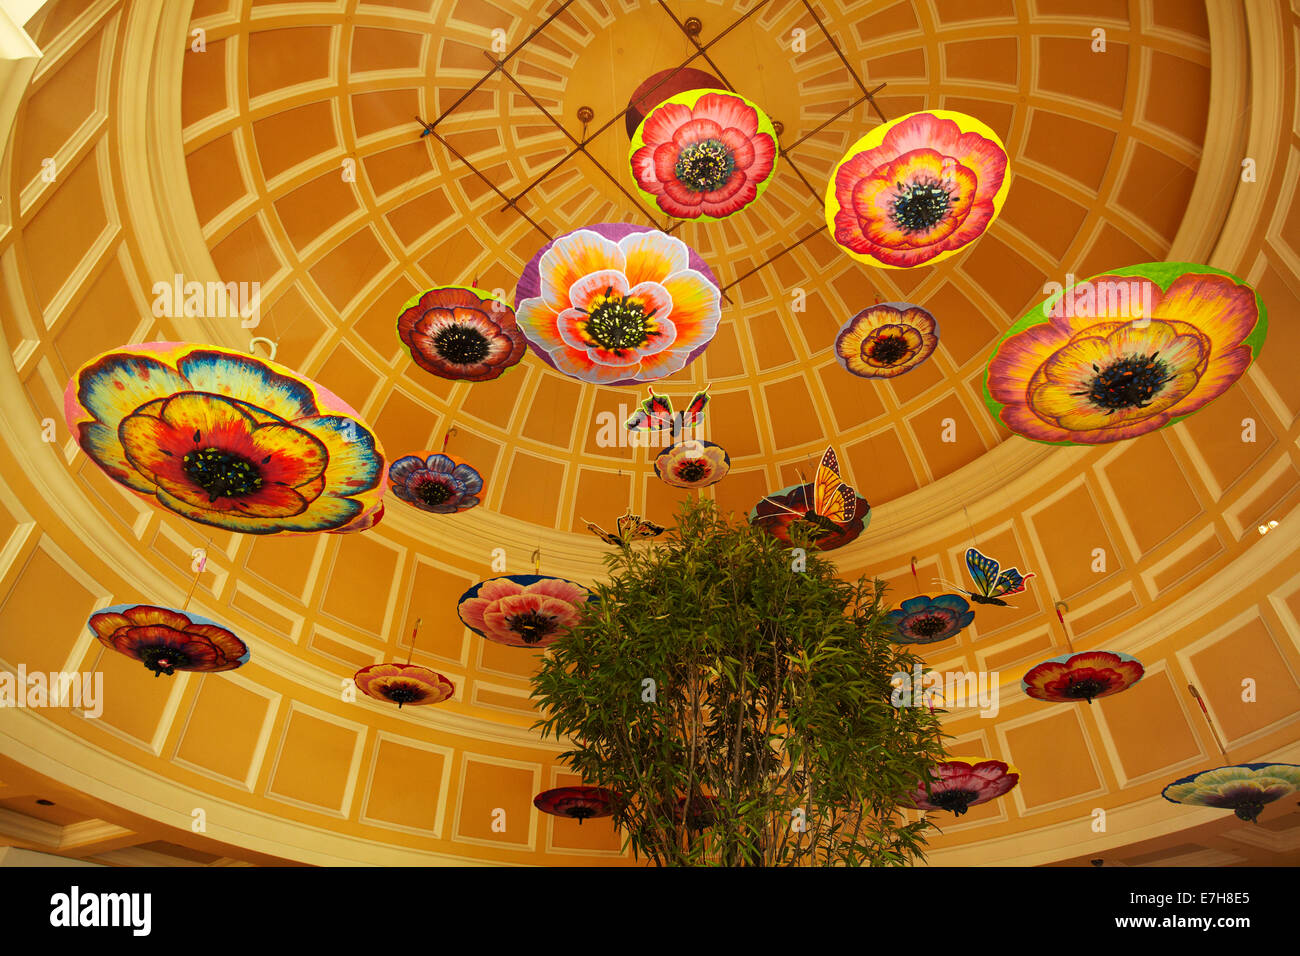 Umbrellas in atrium, Bellagio, Las Vegas, Nevada, USA Stock Photo